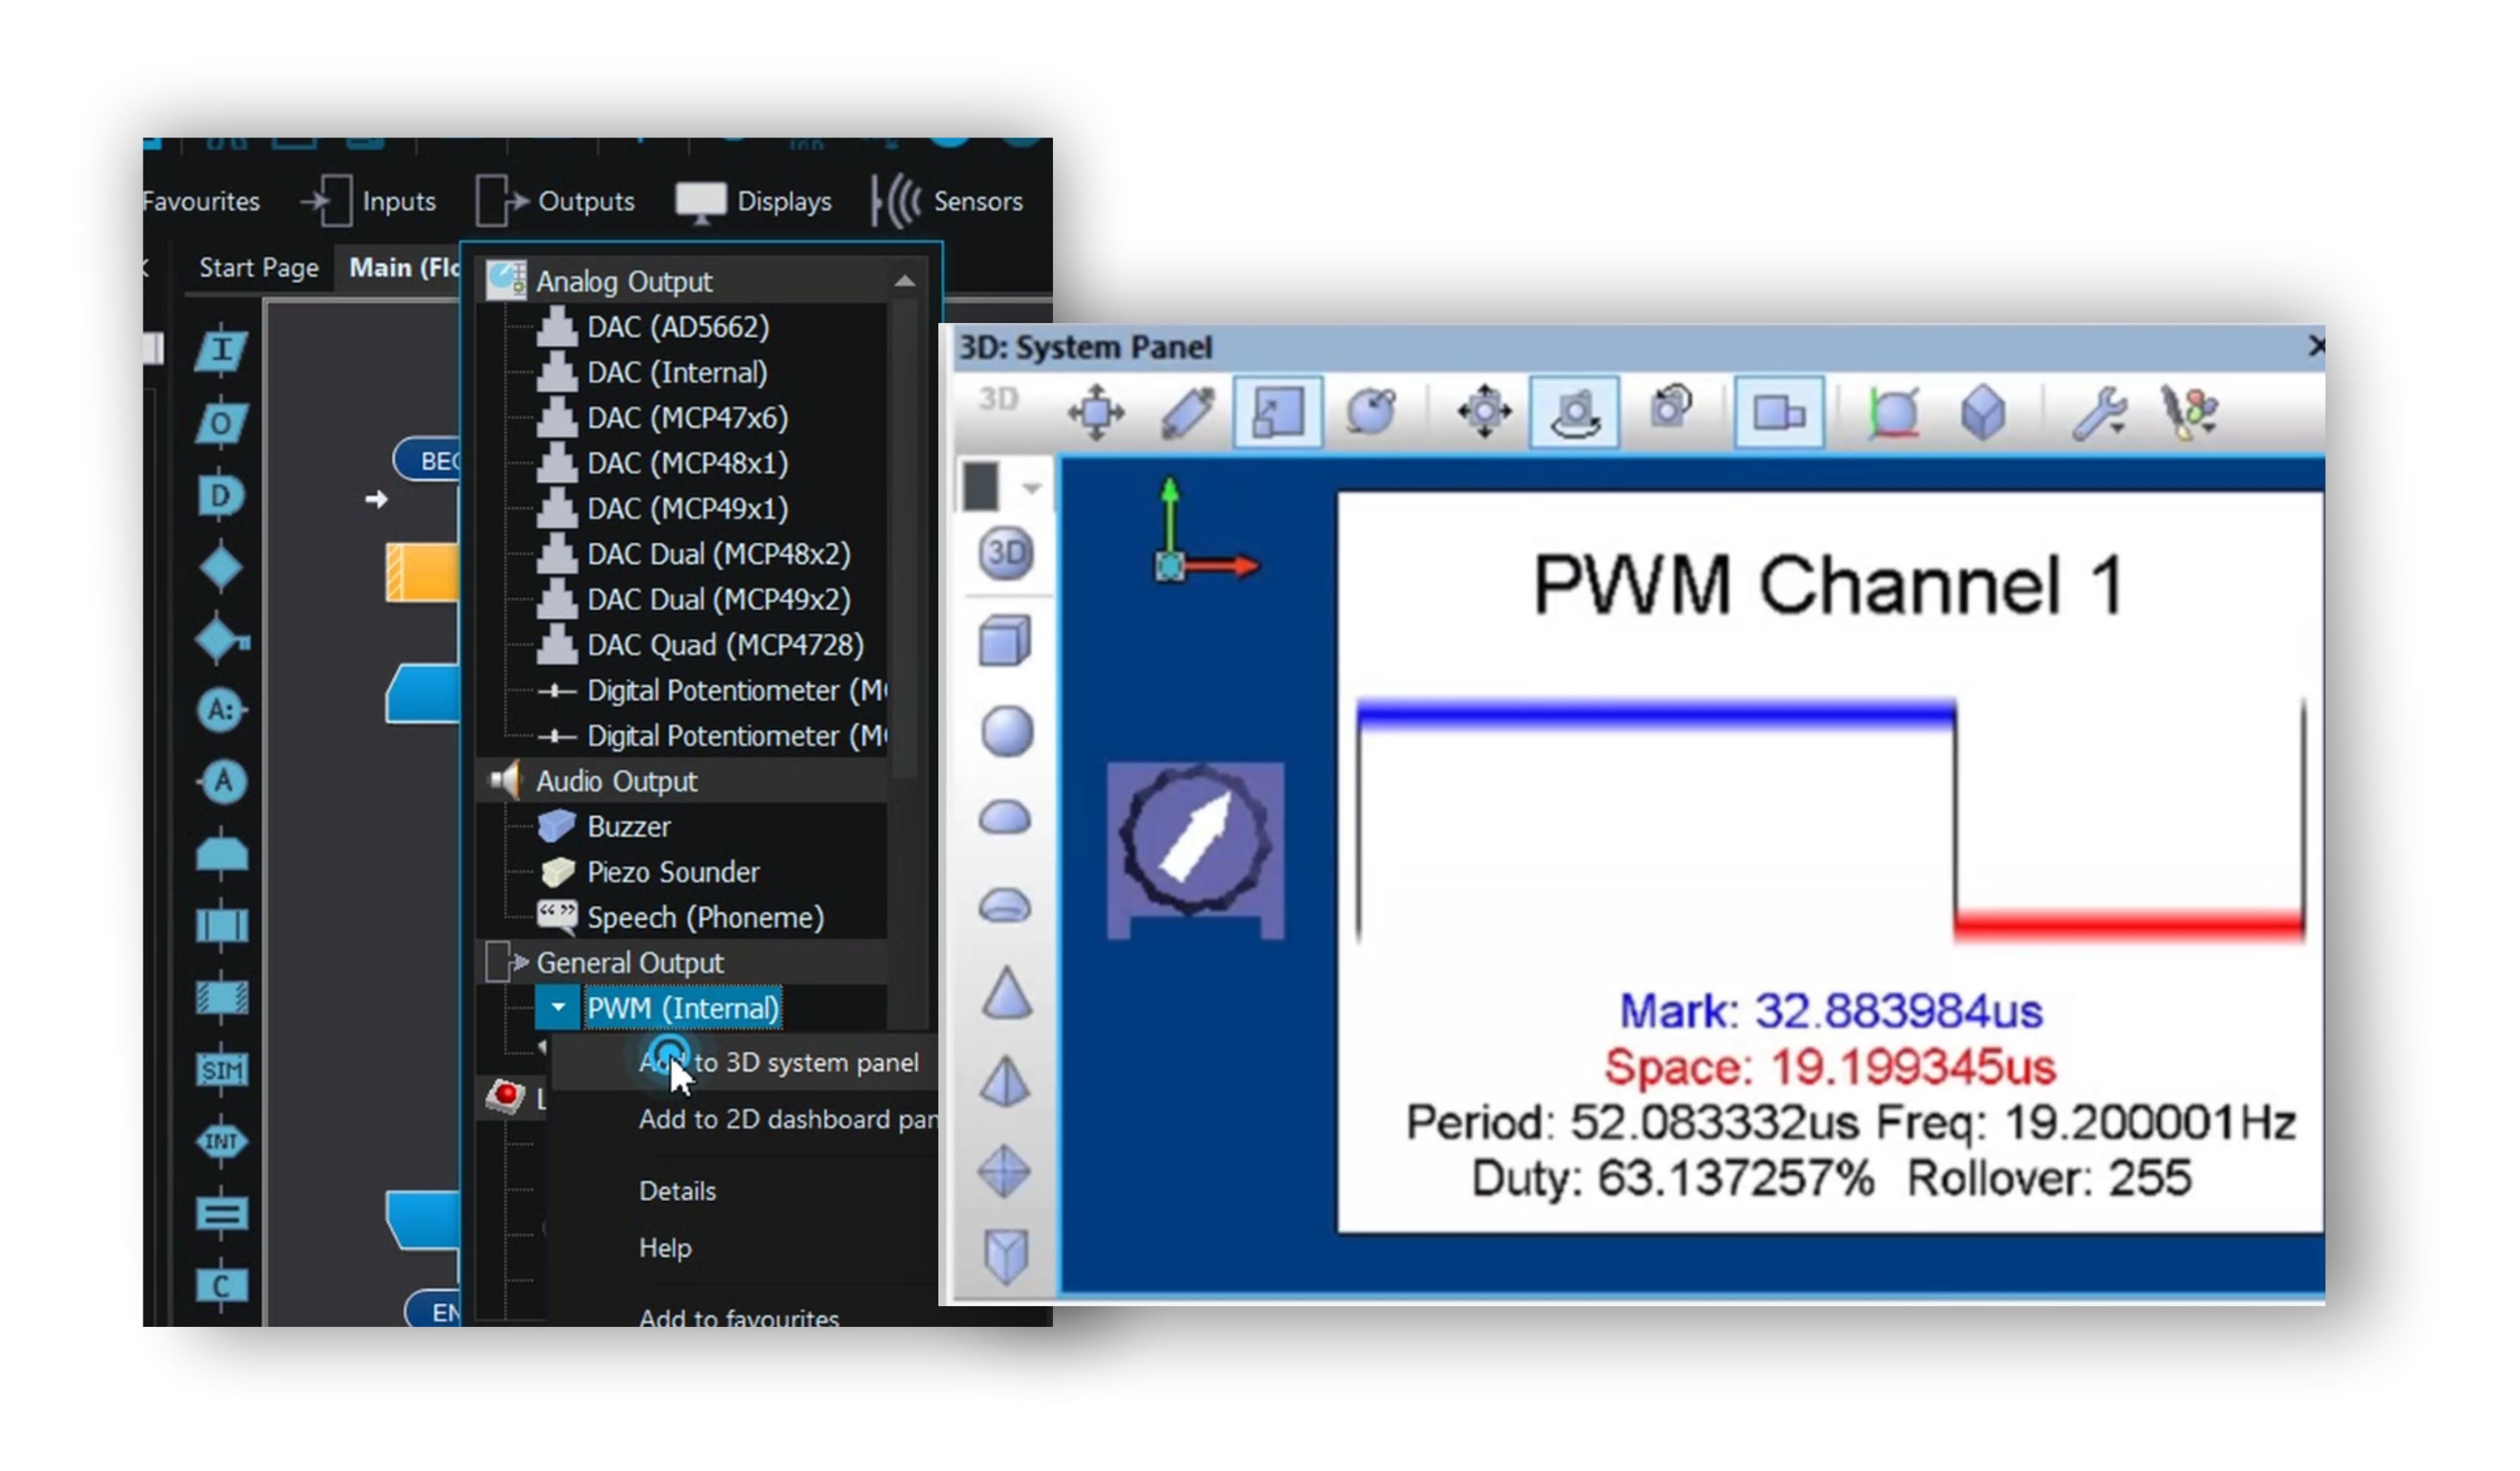 PWM Channel